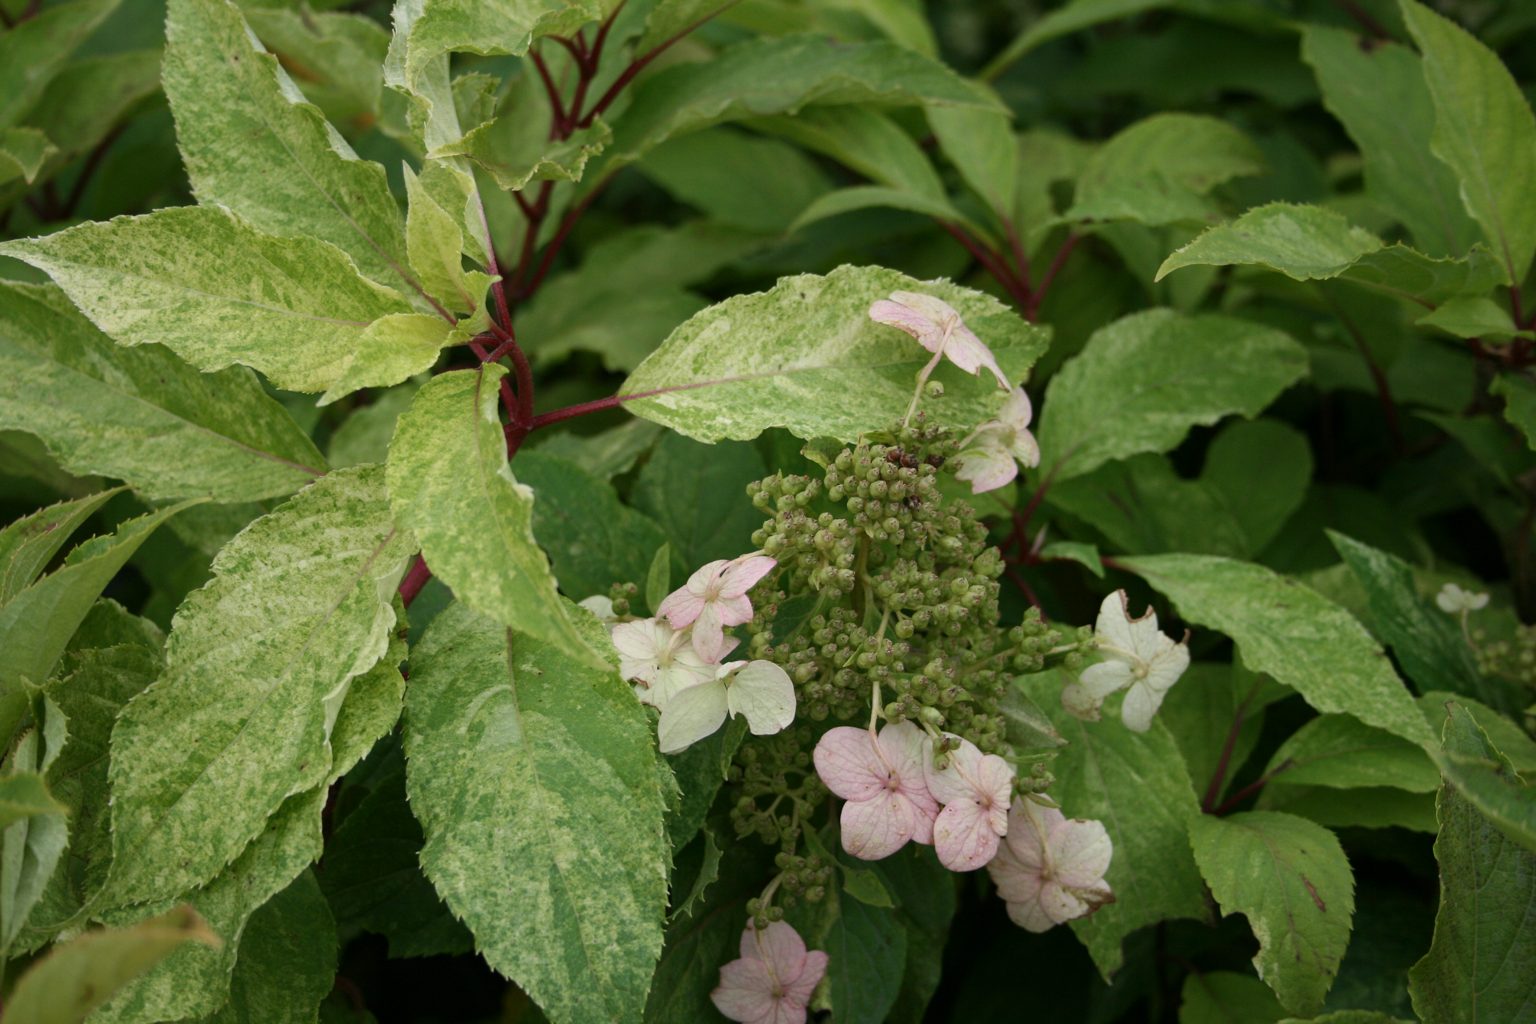 Hortensja bukietowa "Shikoku Flash" / Hydrangea paniculata "Shikoku Flash"